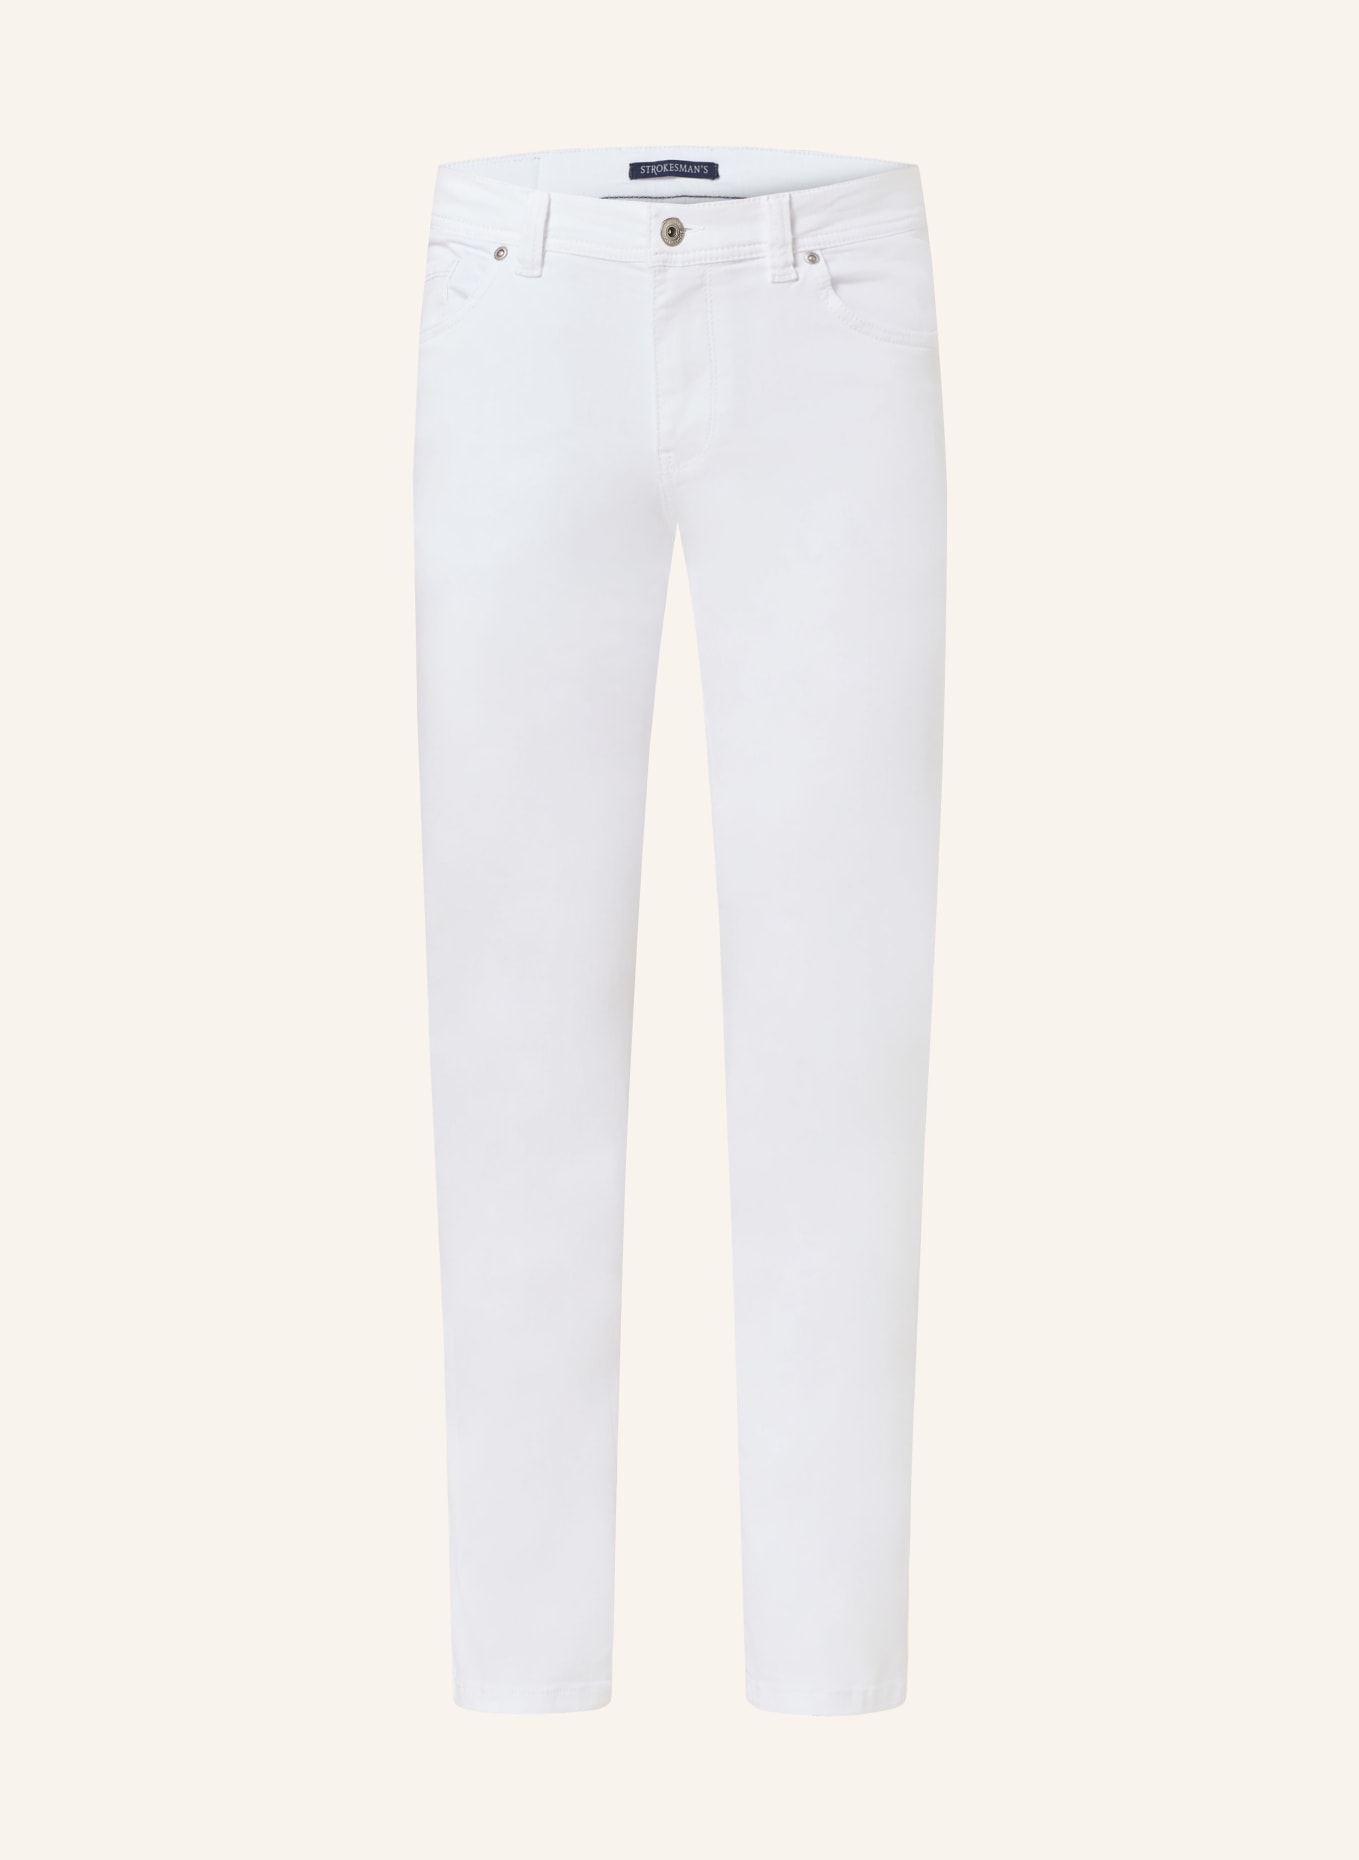 STROKESMAN'S Jeansy slim fit, Kolor: 0132 white (Obrazek 1)